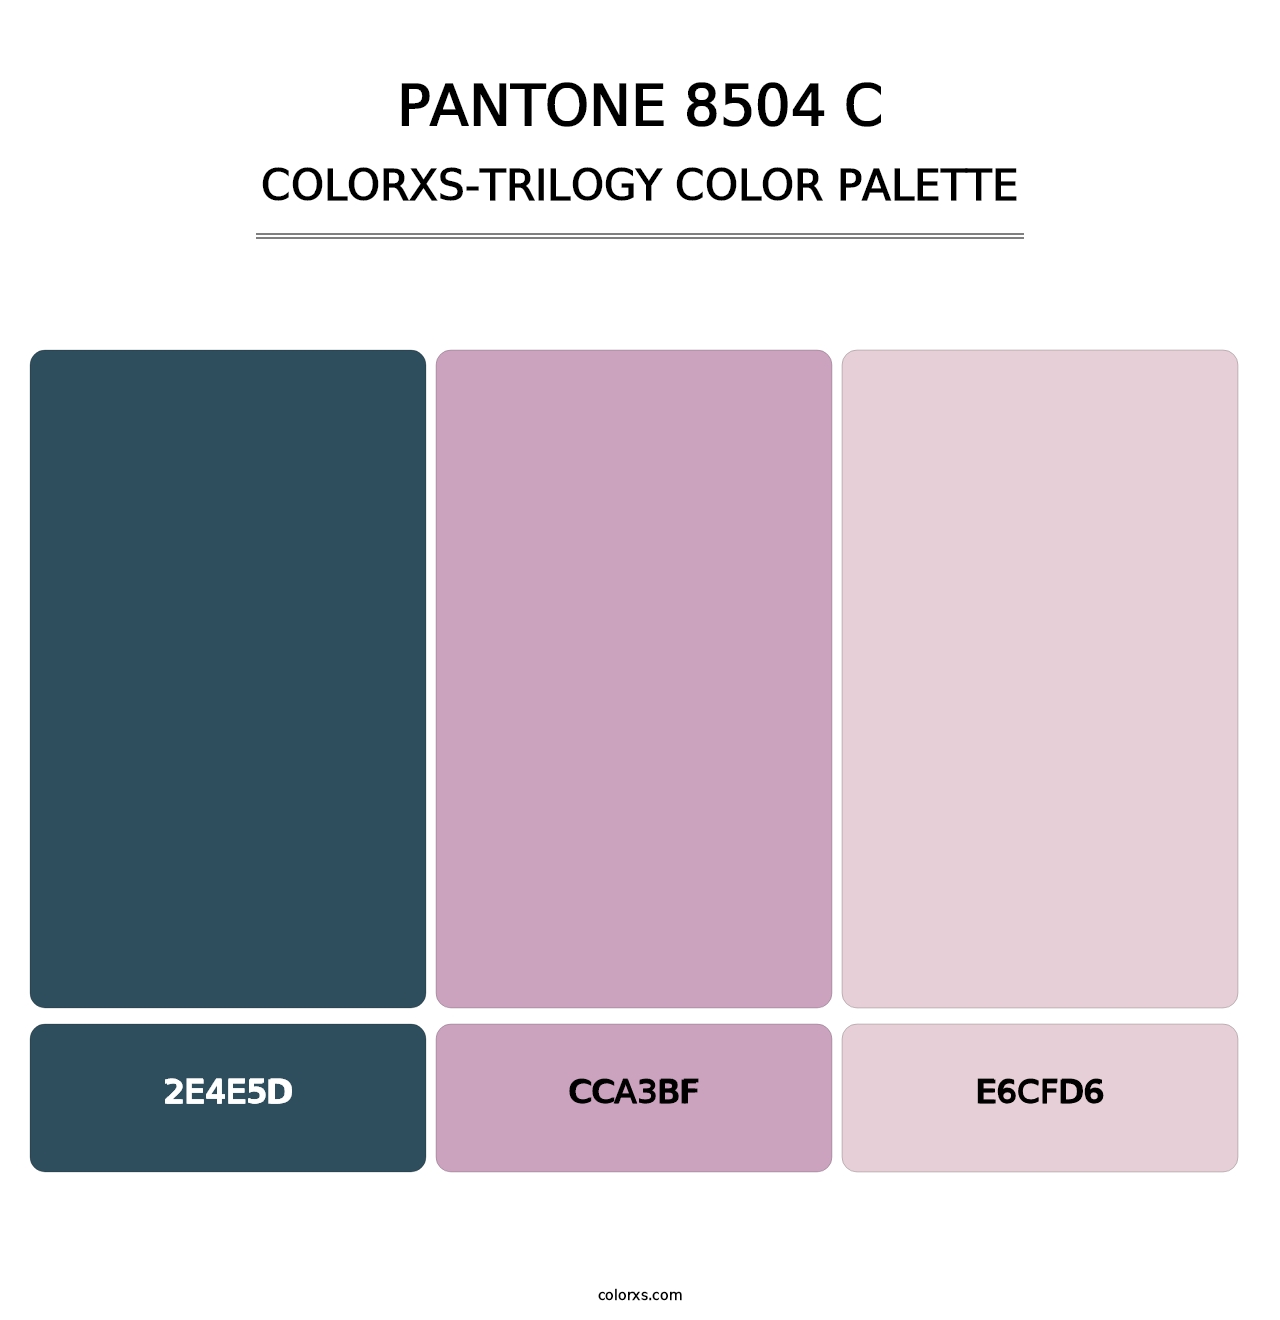 PANTONE 8504 C - Colorxs Trilogy Palette